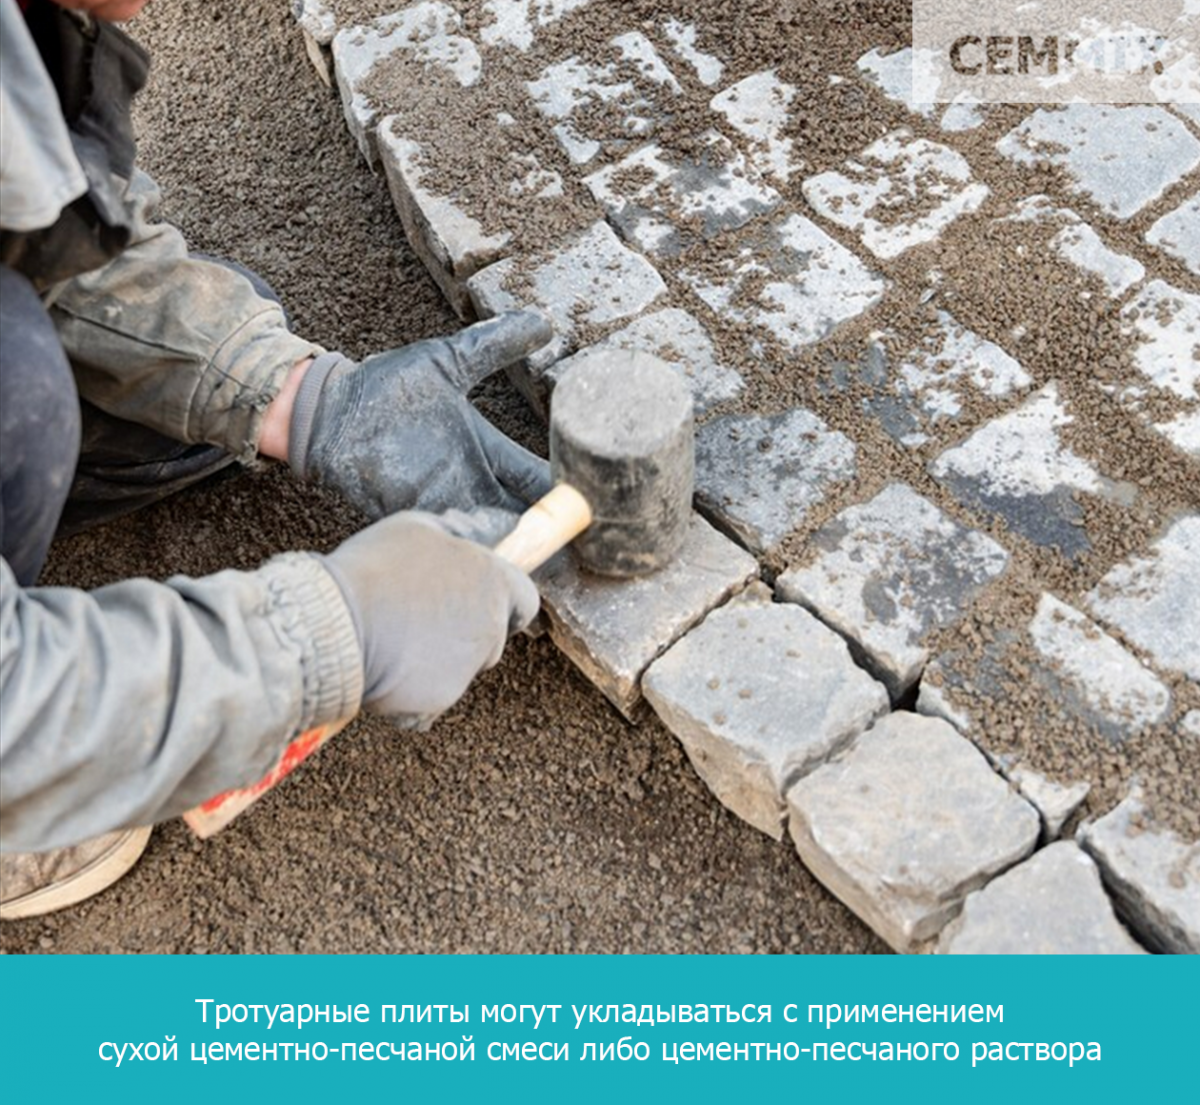 Тротуарные плиты могут укладываться с применением сухой цементно-песчаной смеси либо цементно-песчаного раствора